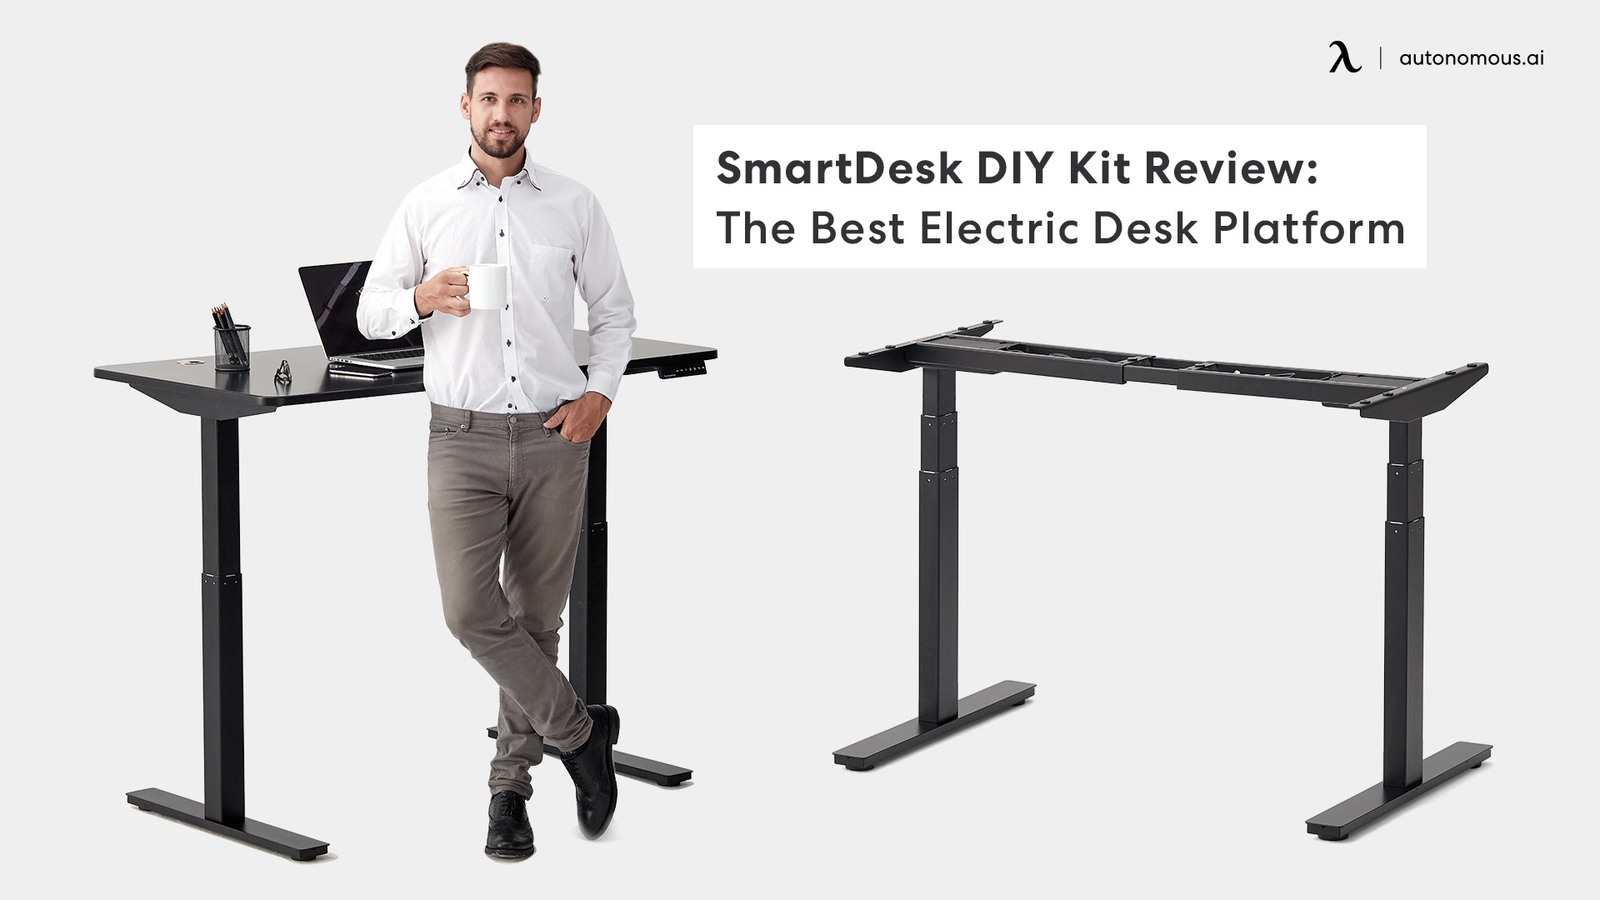 SmartDesk DIY Kit Review: The Best Electric Desk Platform